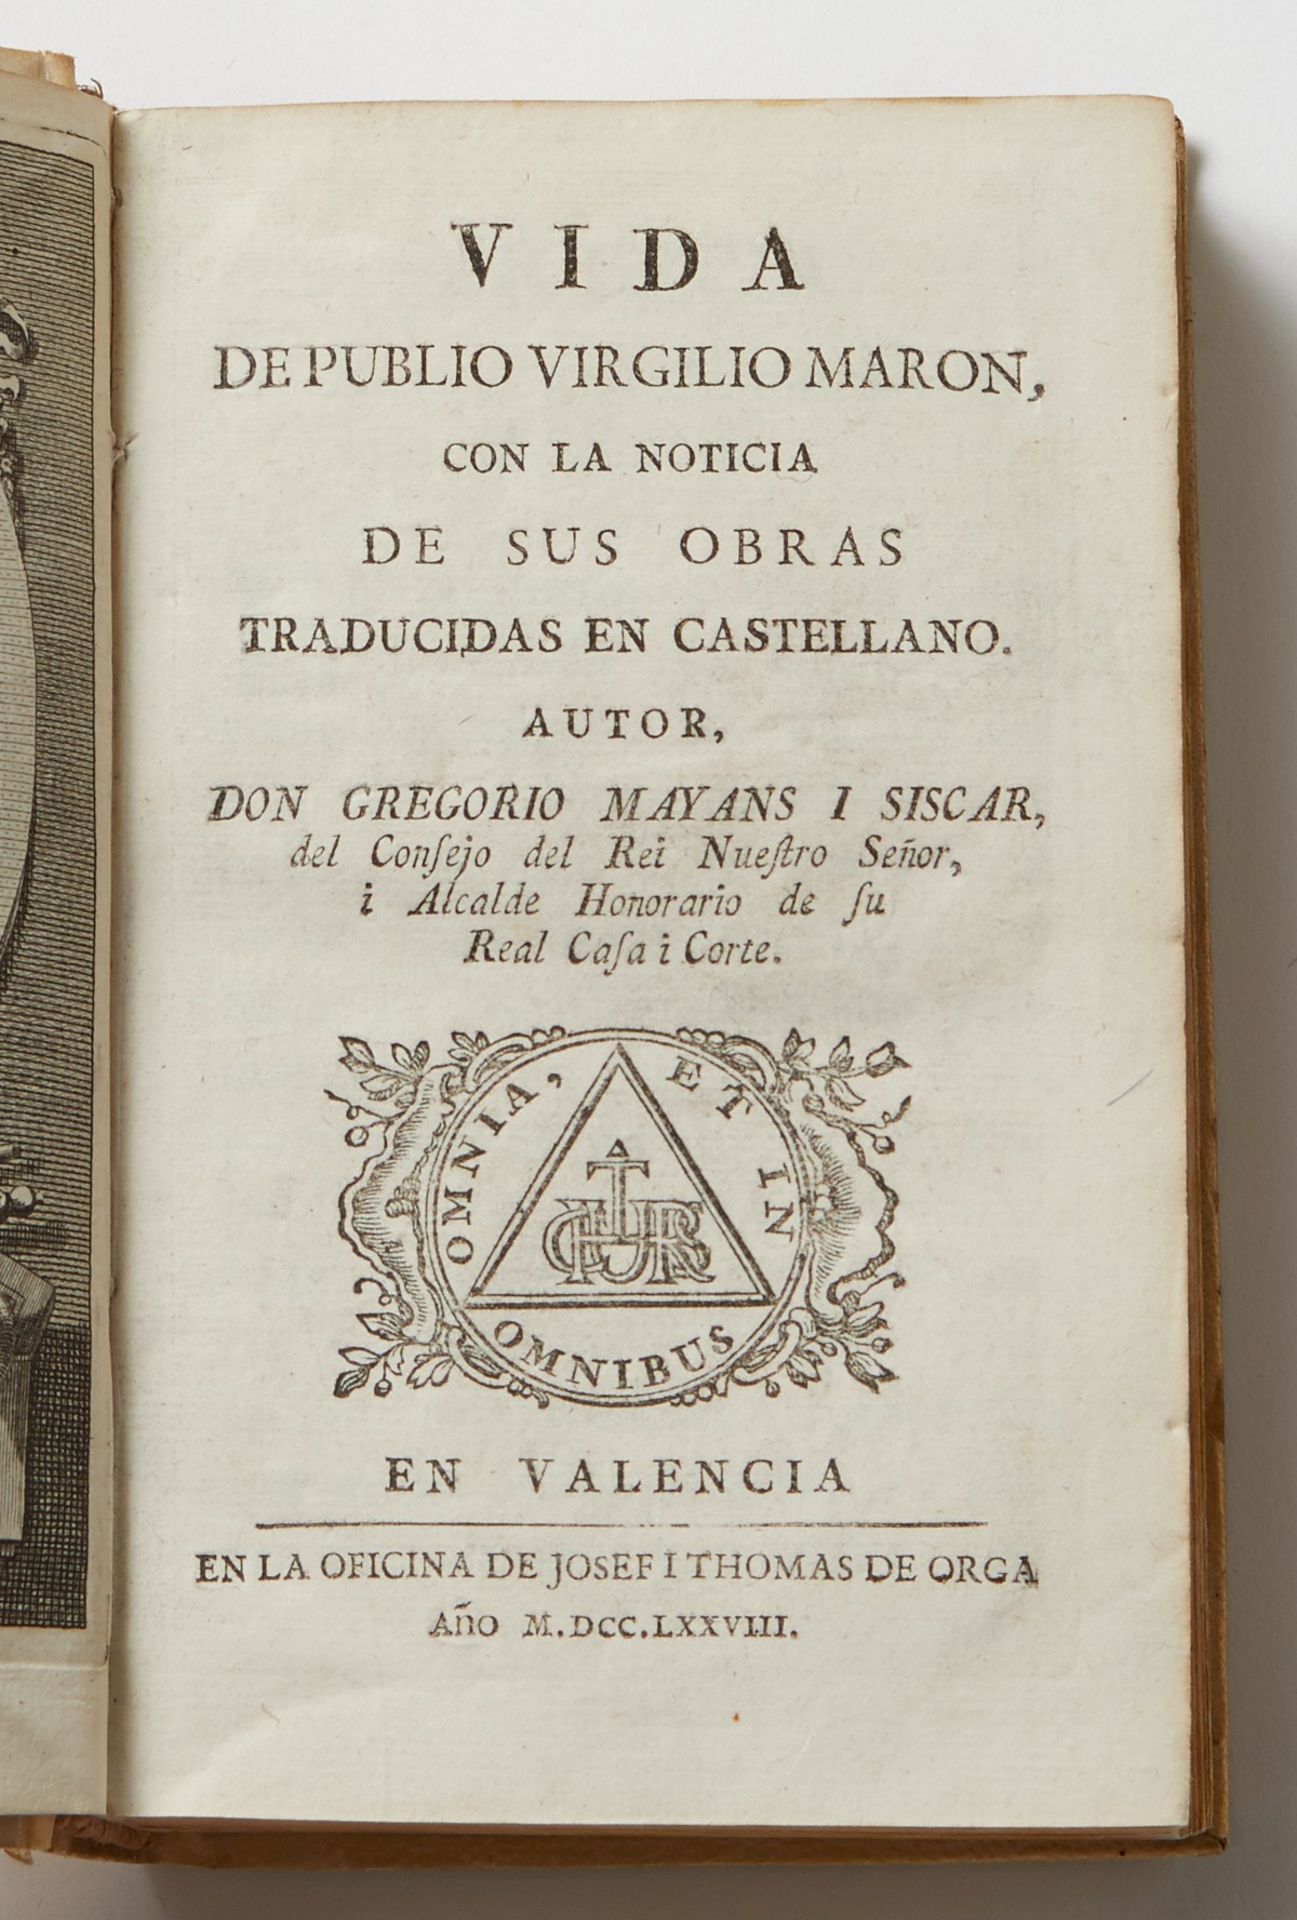 Grp: 7 Books Virgil 17th c. Marcus Aurelius - Image 4 of 8